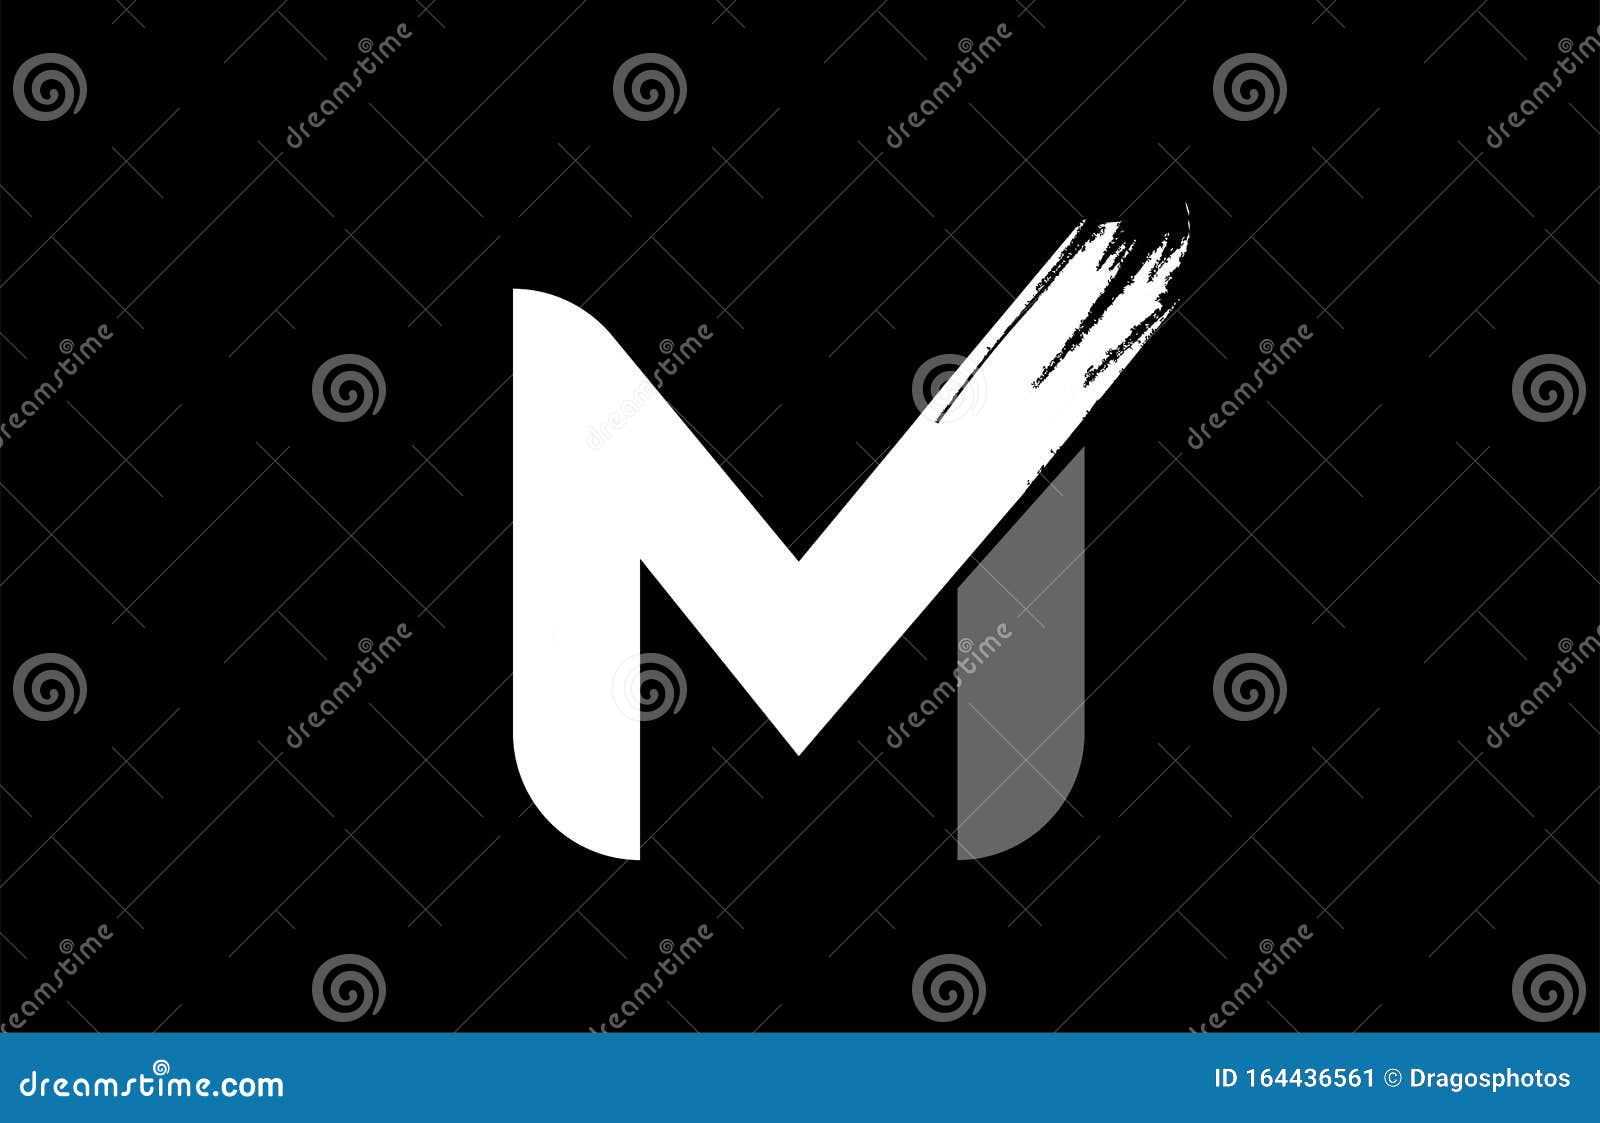 Logo chữ cái M đen trắng trên nền đen, được tạo ra bởi ký tự grunge, mang lại sự độc đáo và táo bạo. Nhấn vào hình ảnh để khám phá thêm những bí mật được ẩn giấu bên trong hình ảnh này.